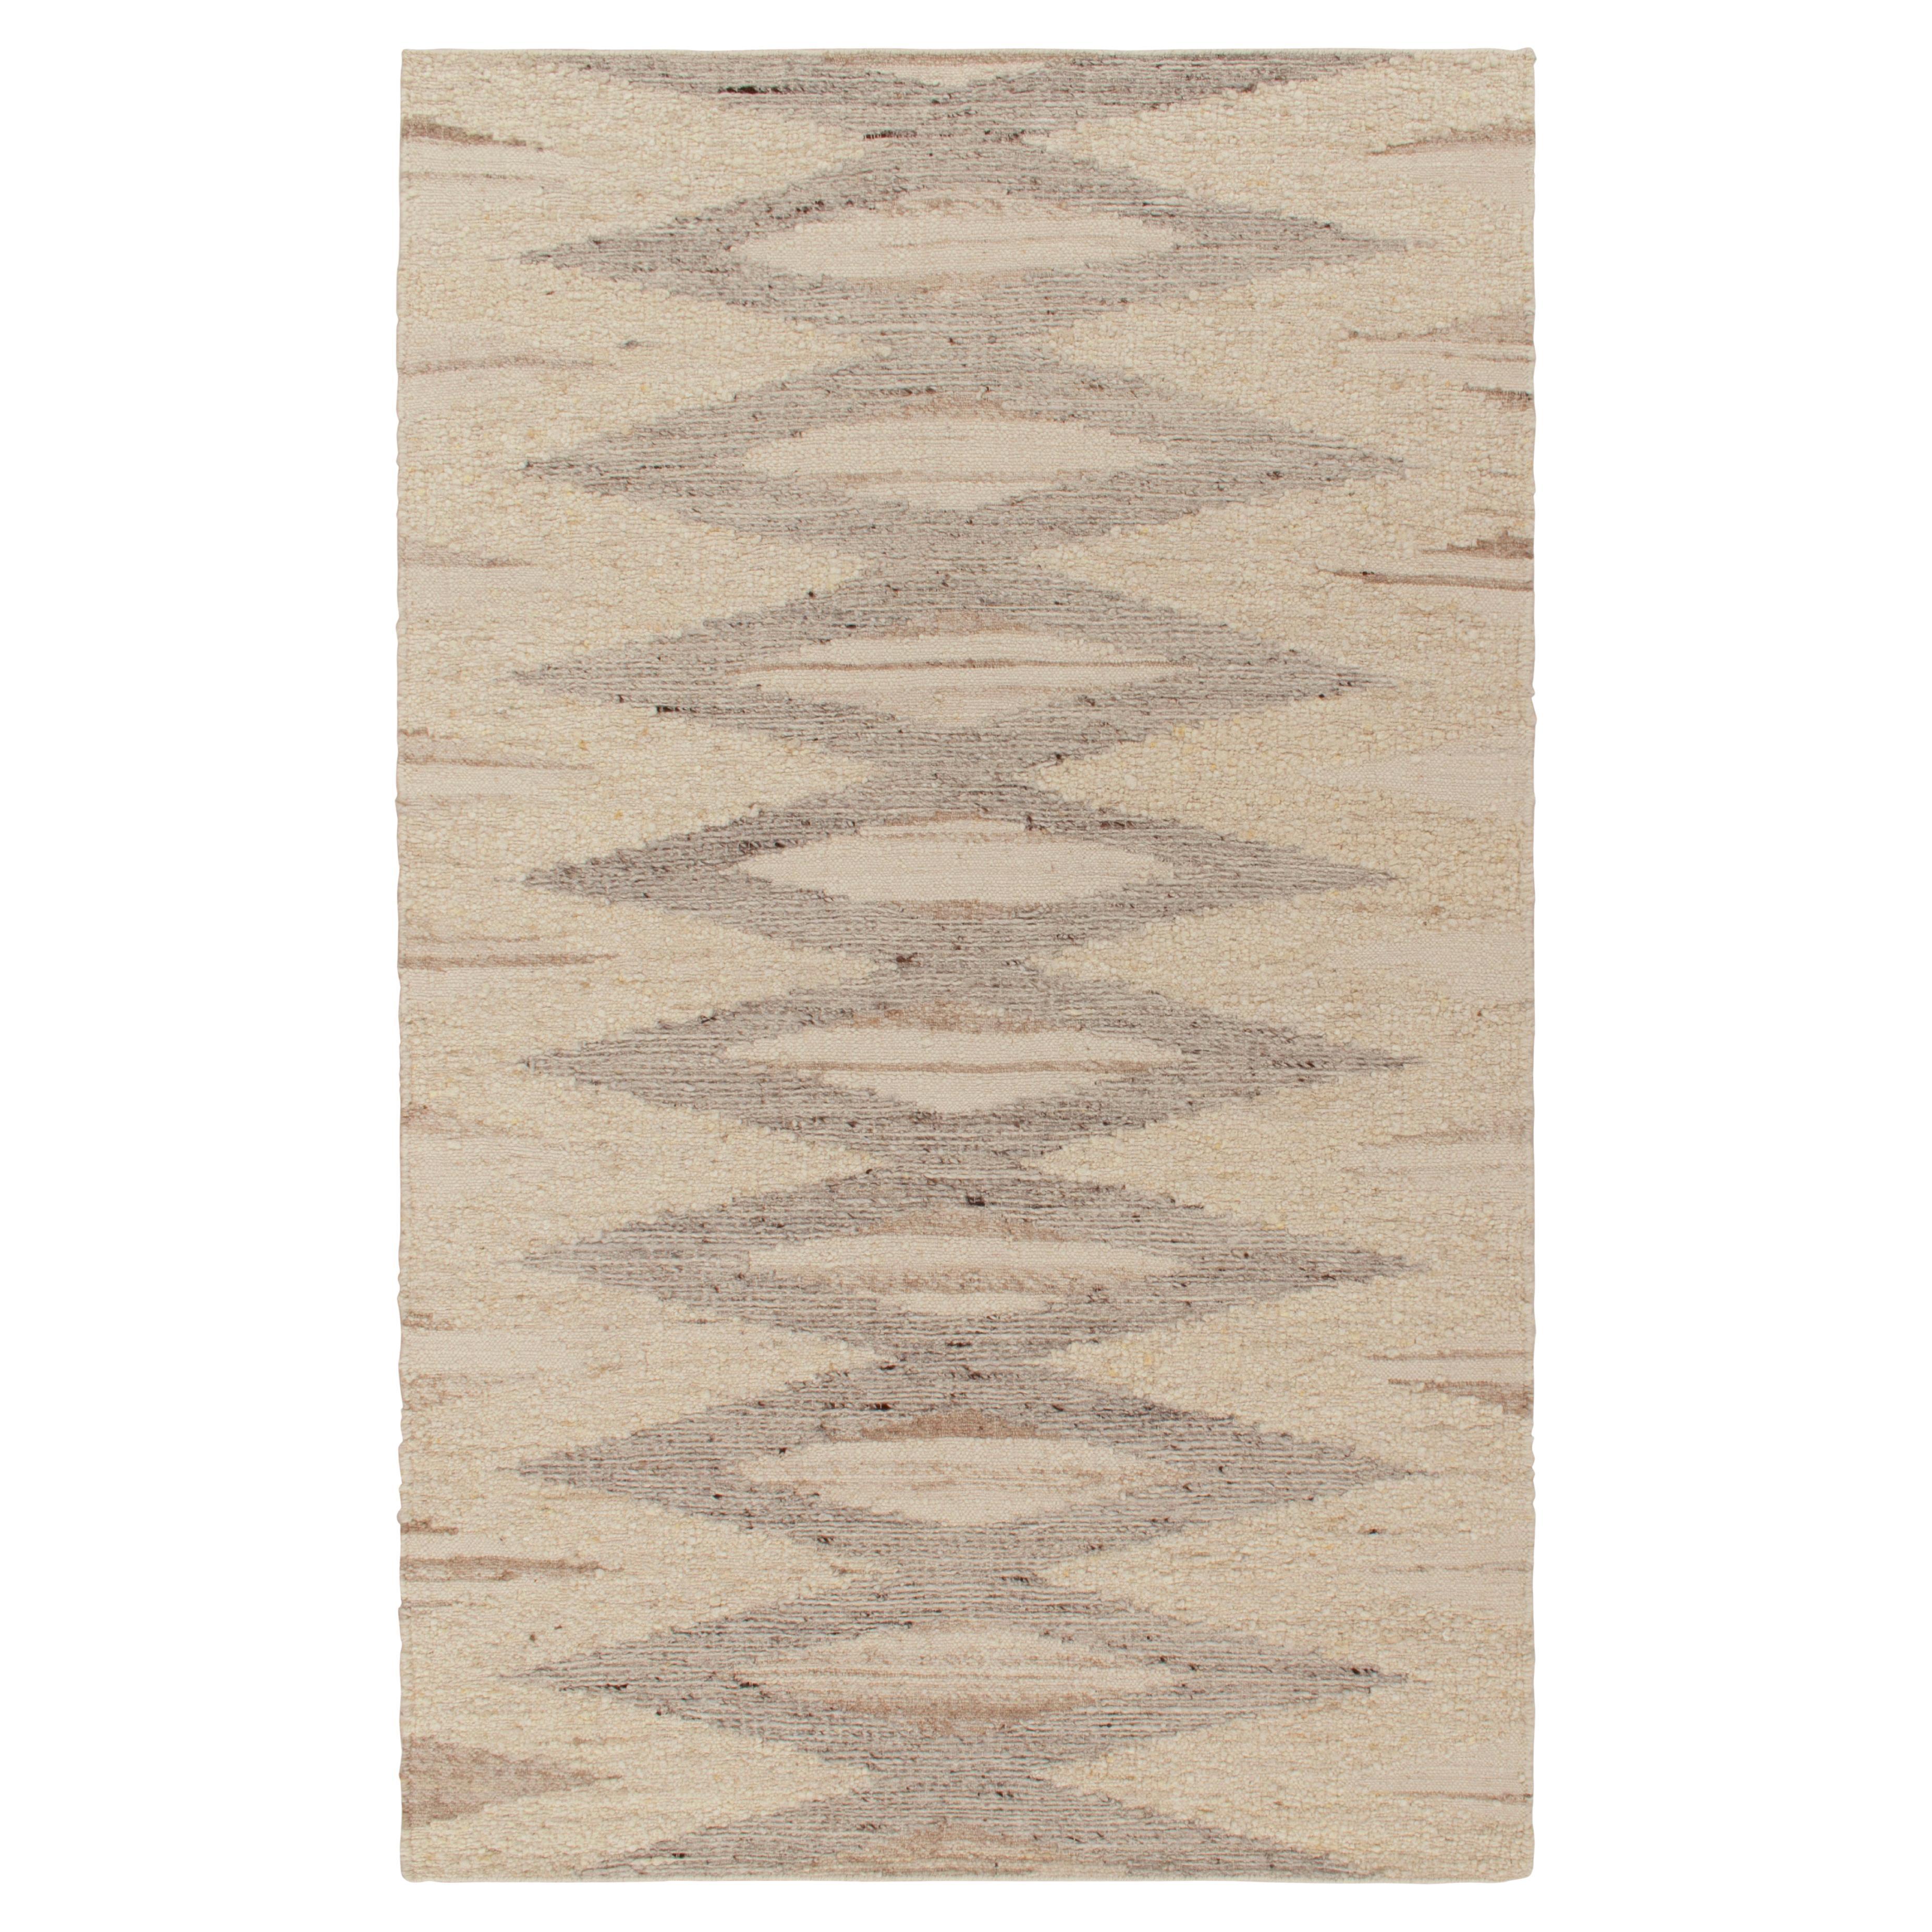 Zeitgenössischer Teppich und Kelim-Teppich in Beige-Braun, Grau mit geometrischem Muster